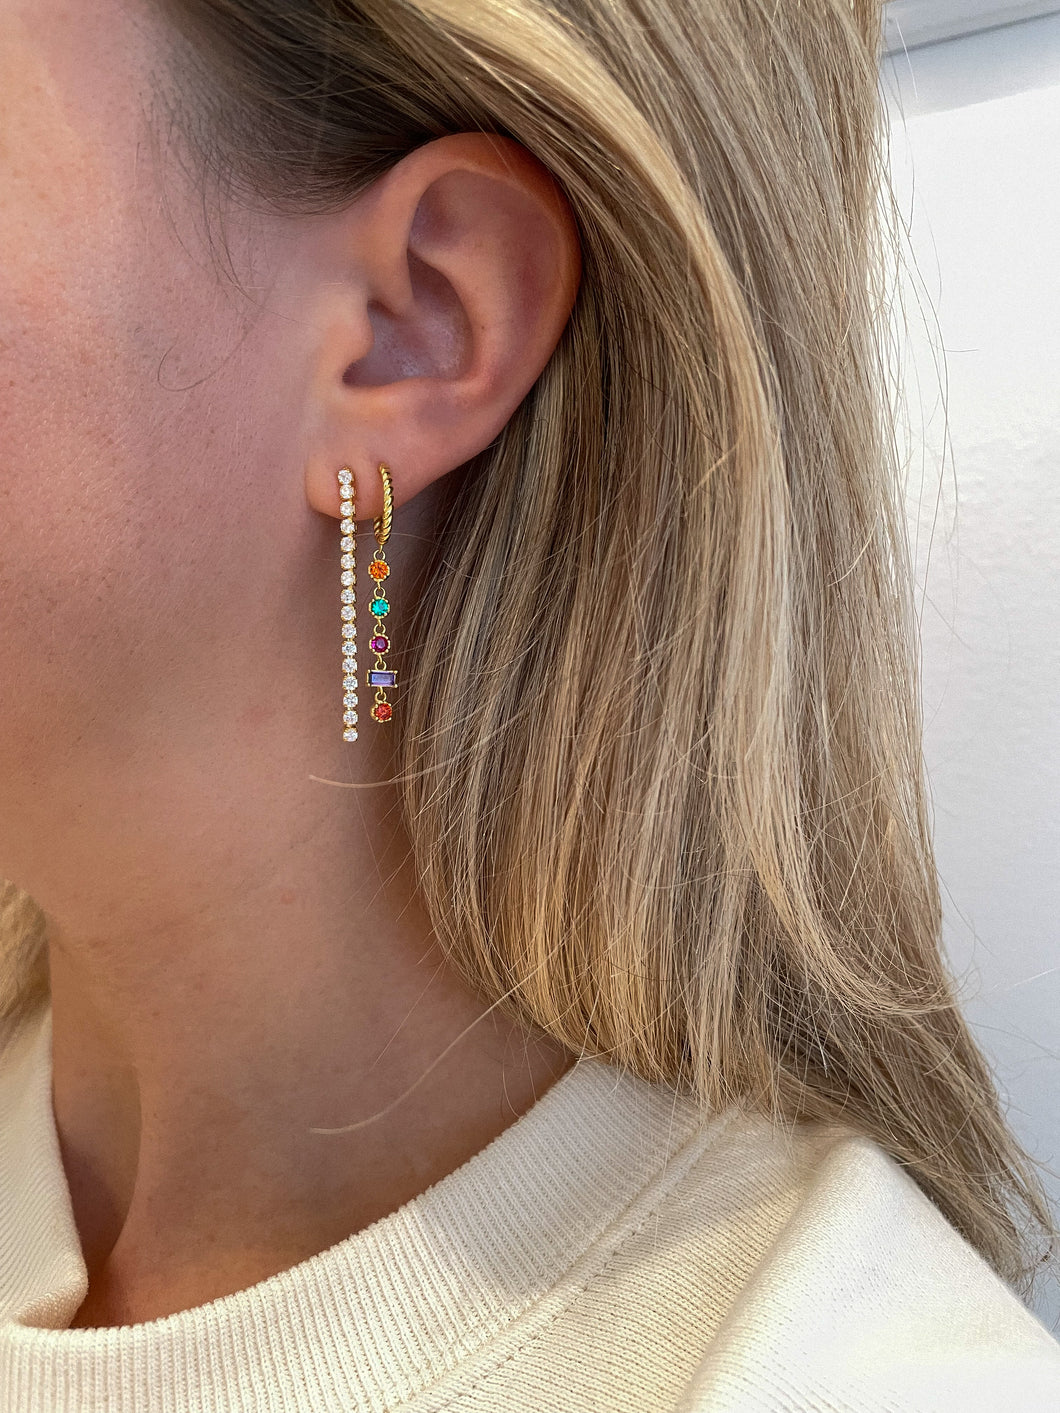 Tennis earrings